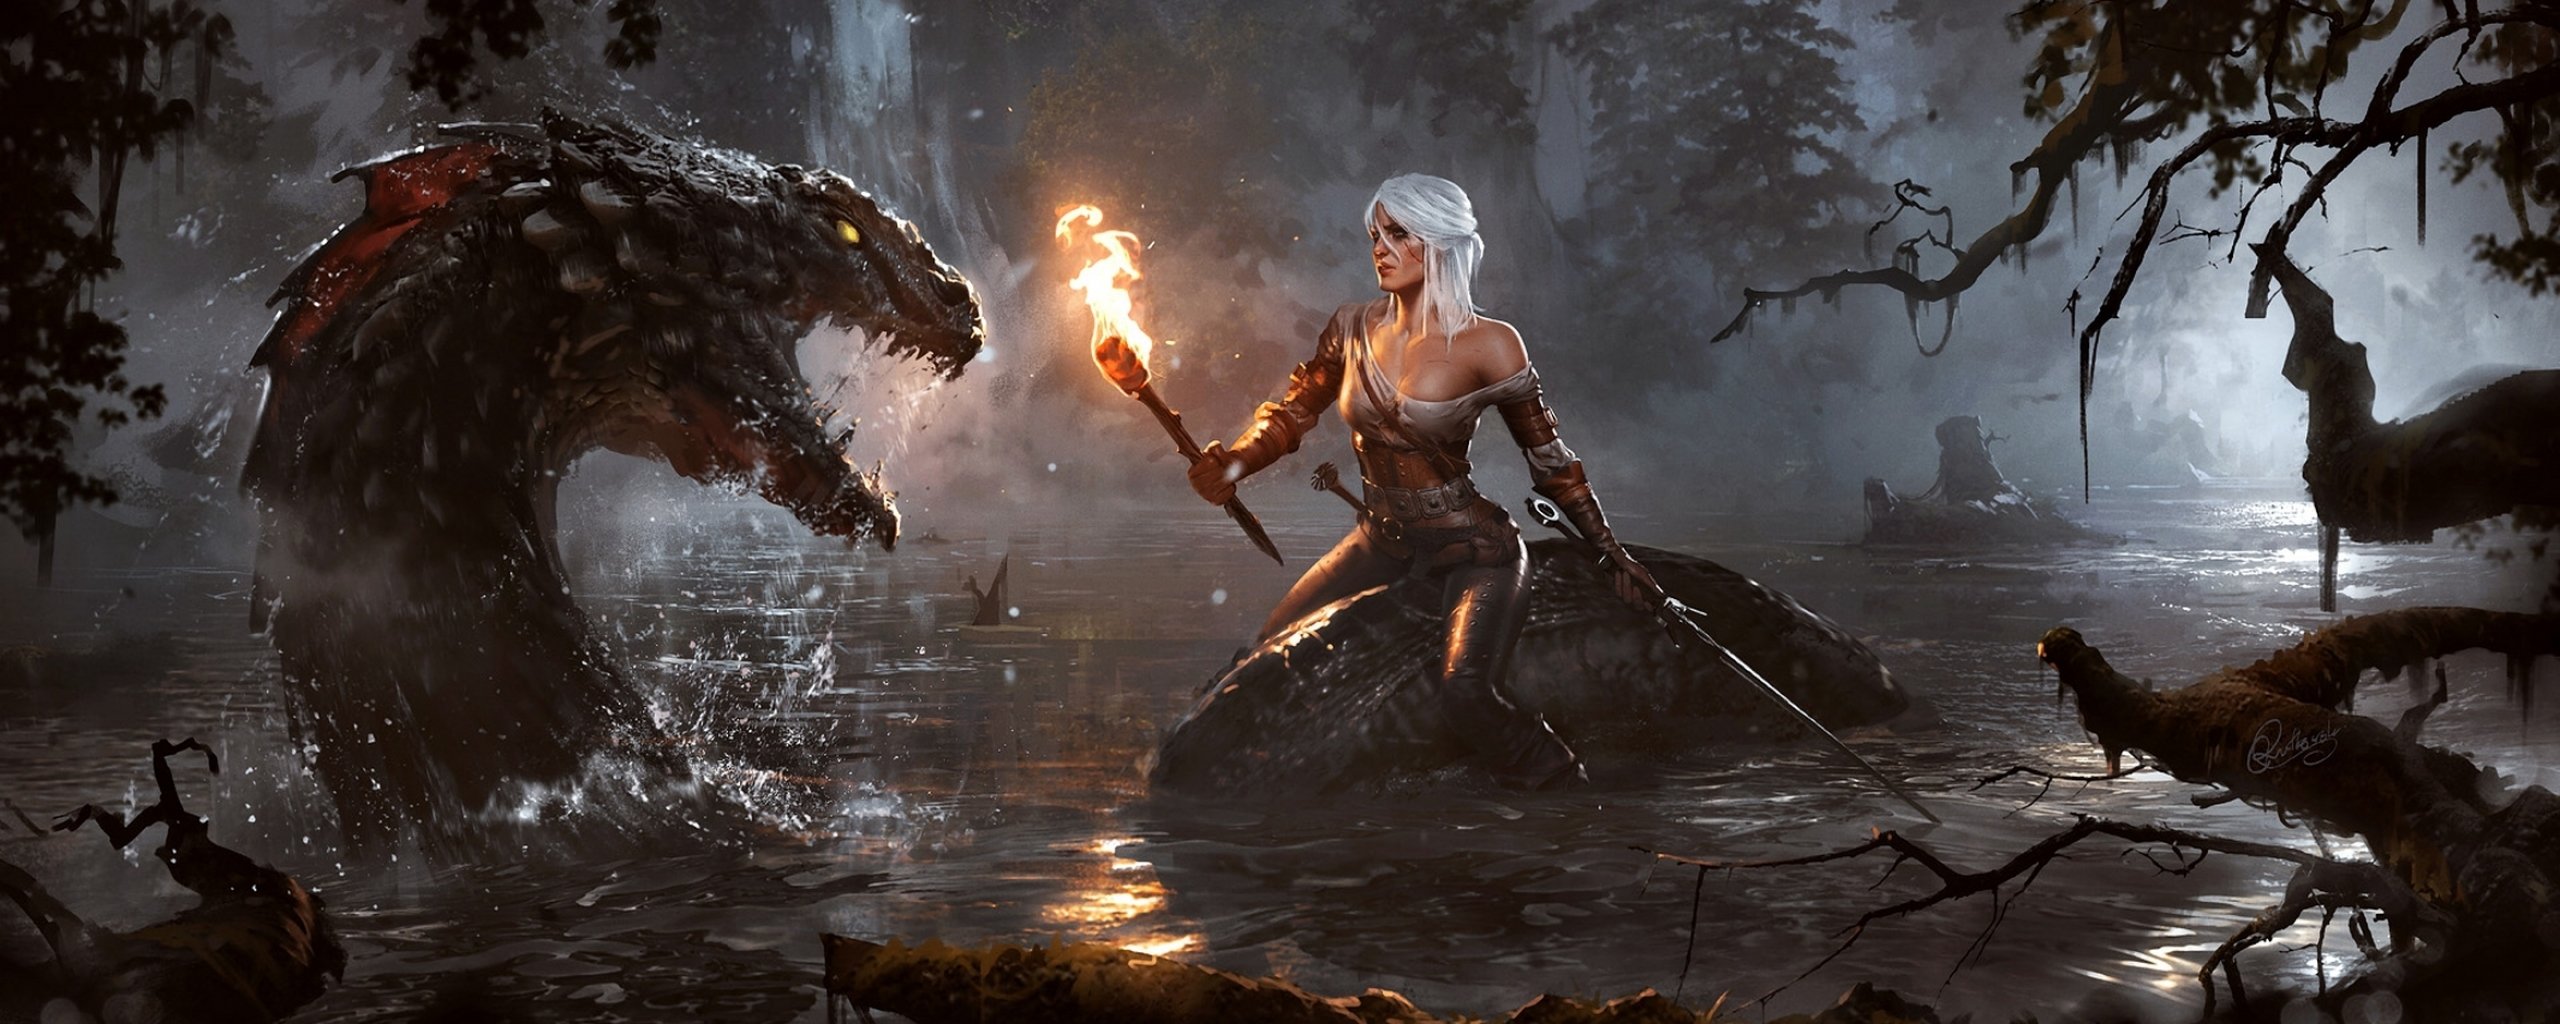 witcher Wild Hunt Fantasy Action Fighting Warrior Dark